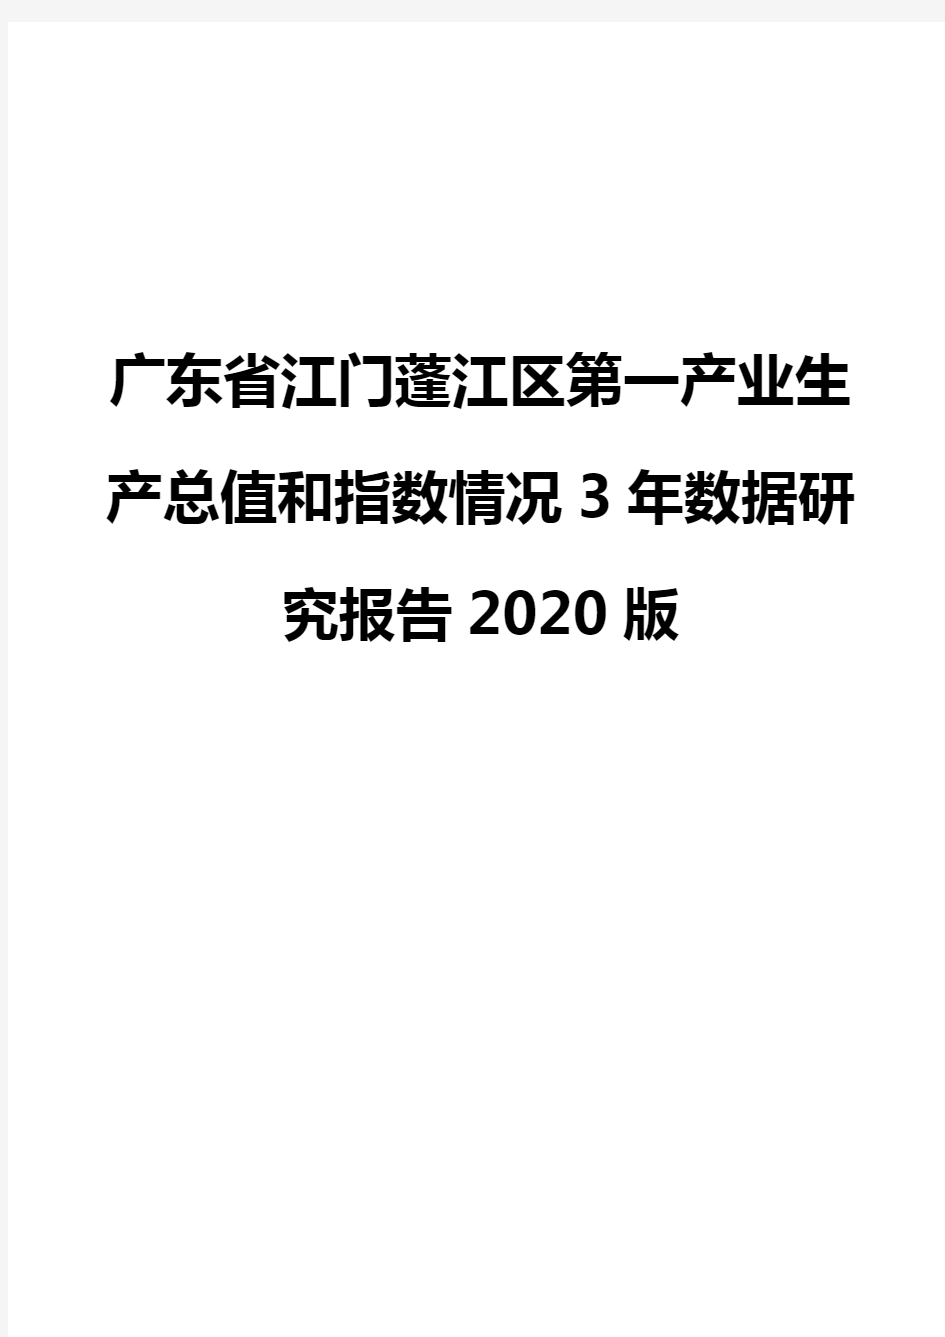 广东省江门蓬江区第一产业生产总值和指数情况3年数据研究报告2020版